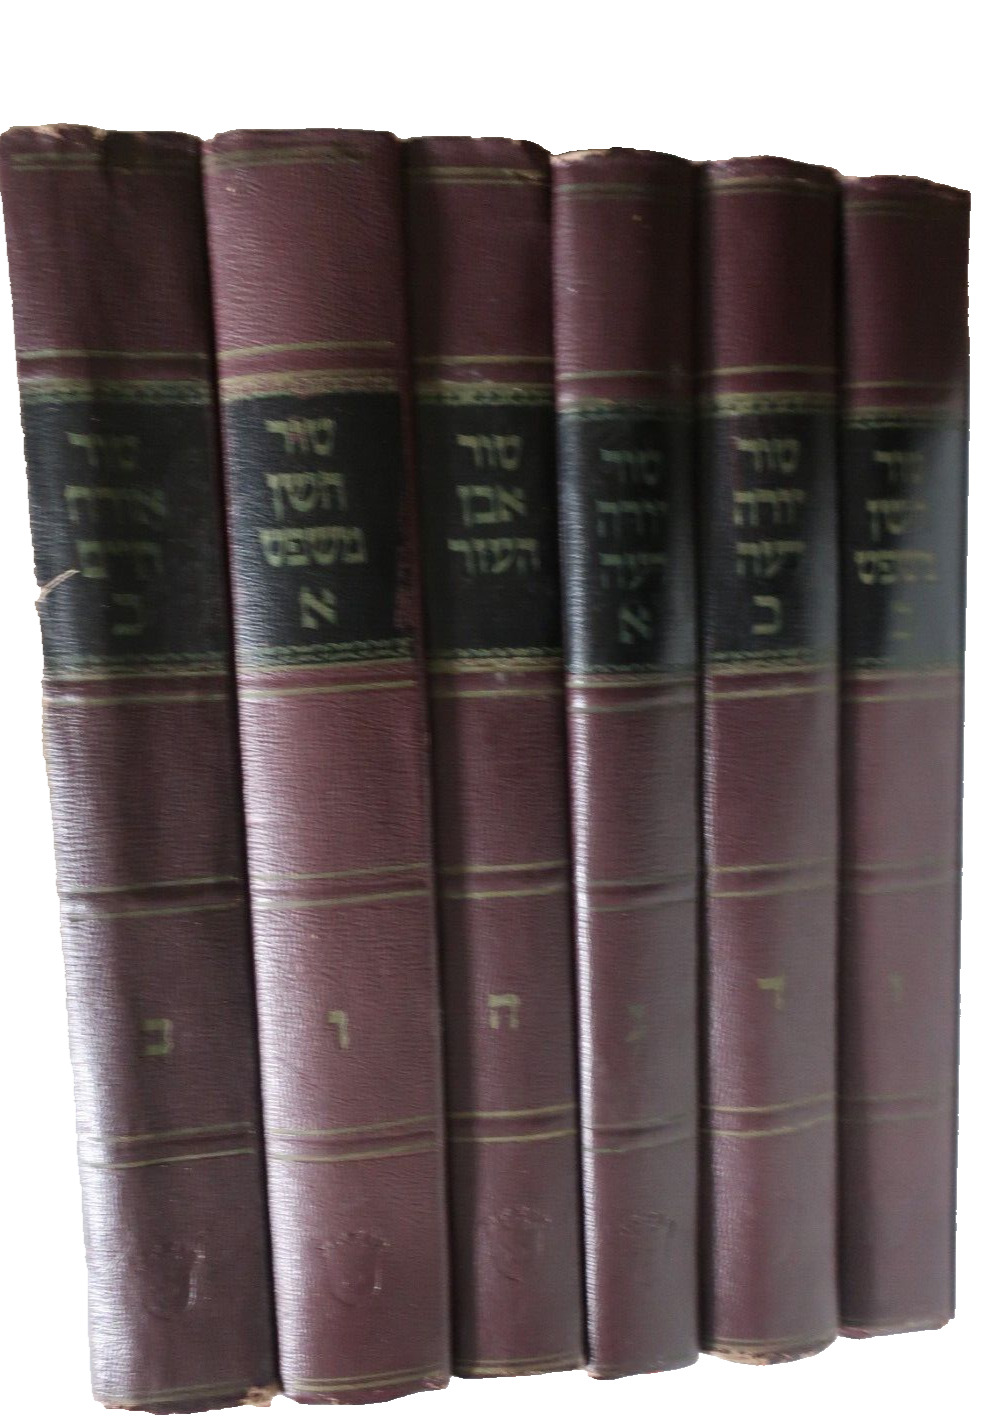 6 Volume Tur Yaakov Ben Asher Mega Set Jewish Law (first volume missing) טור